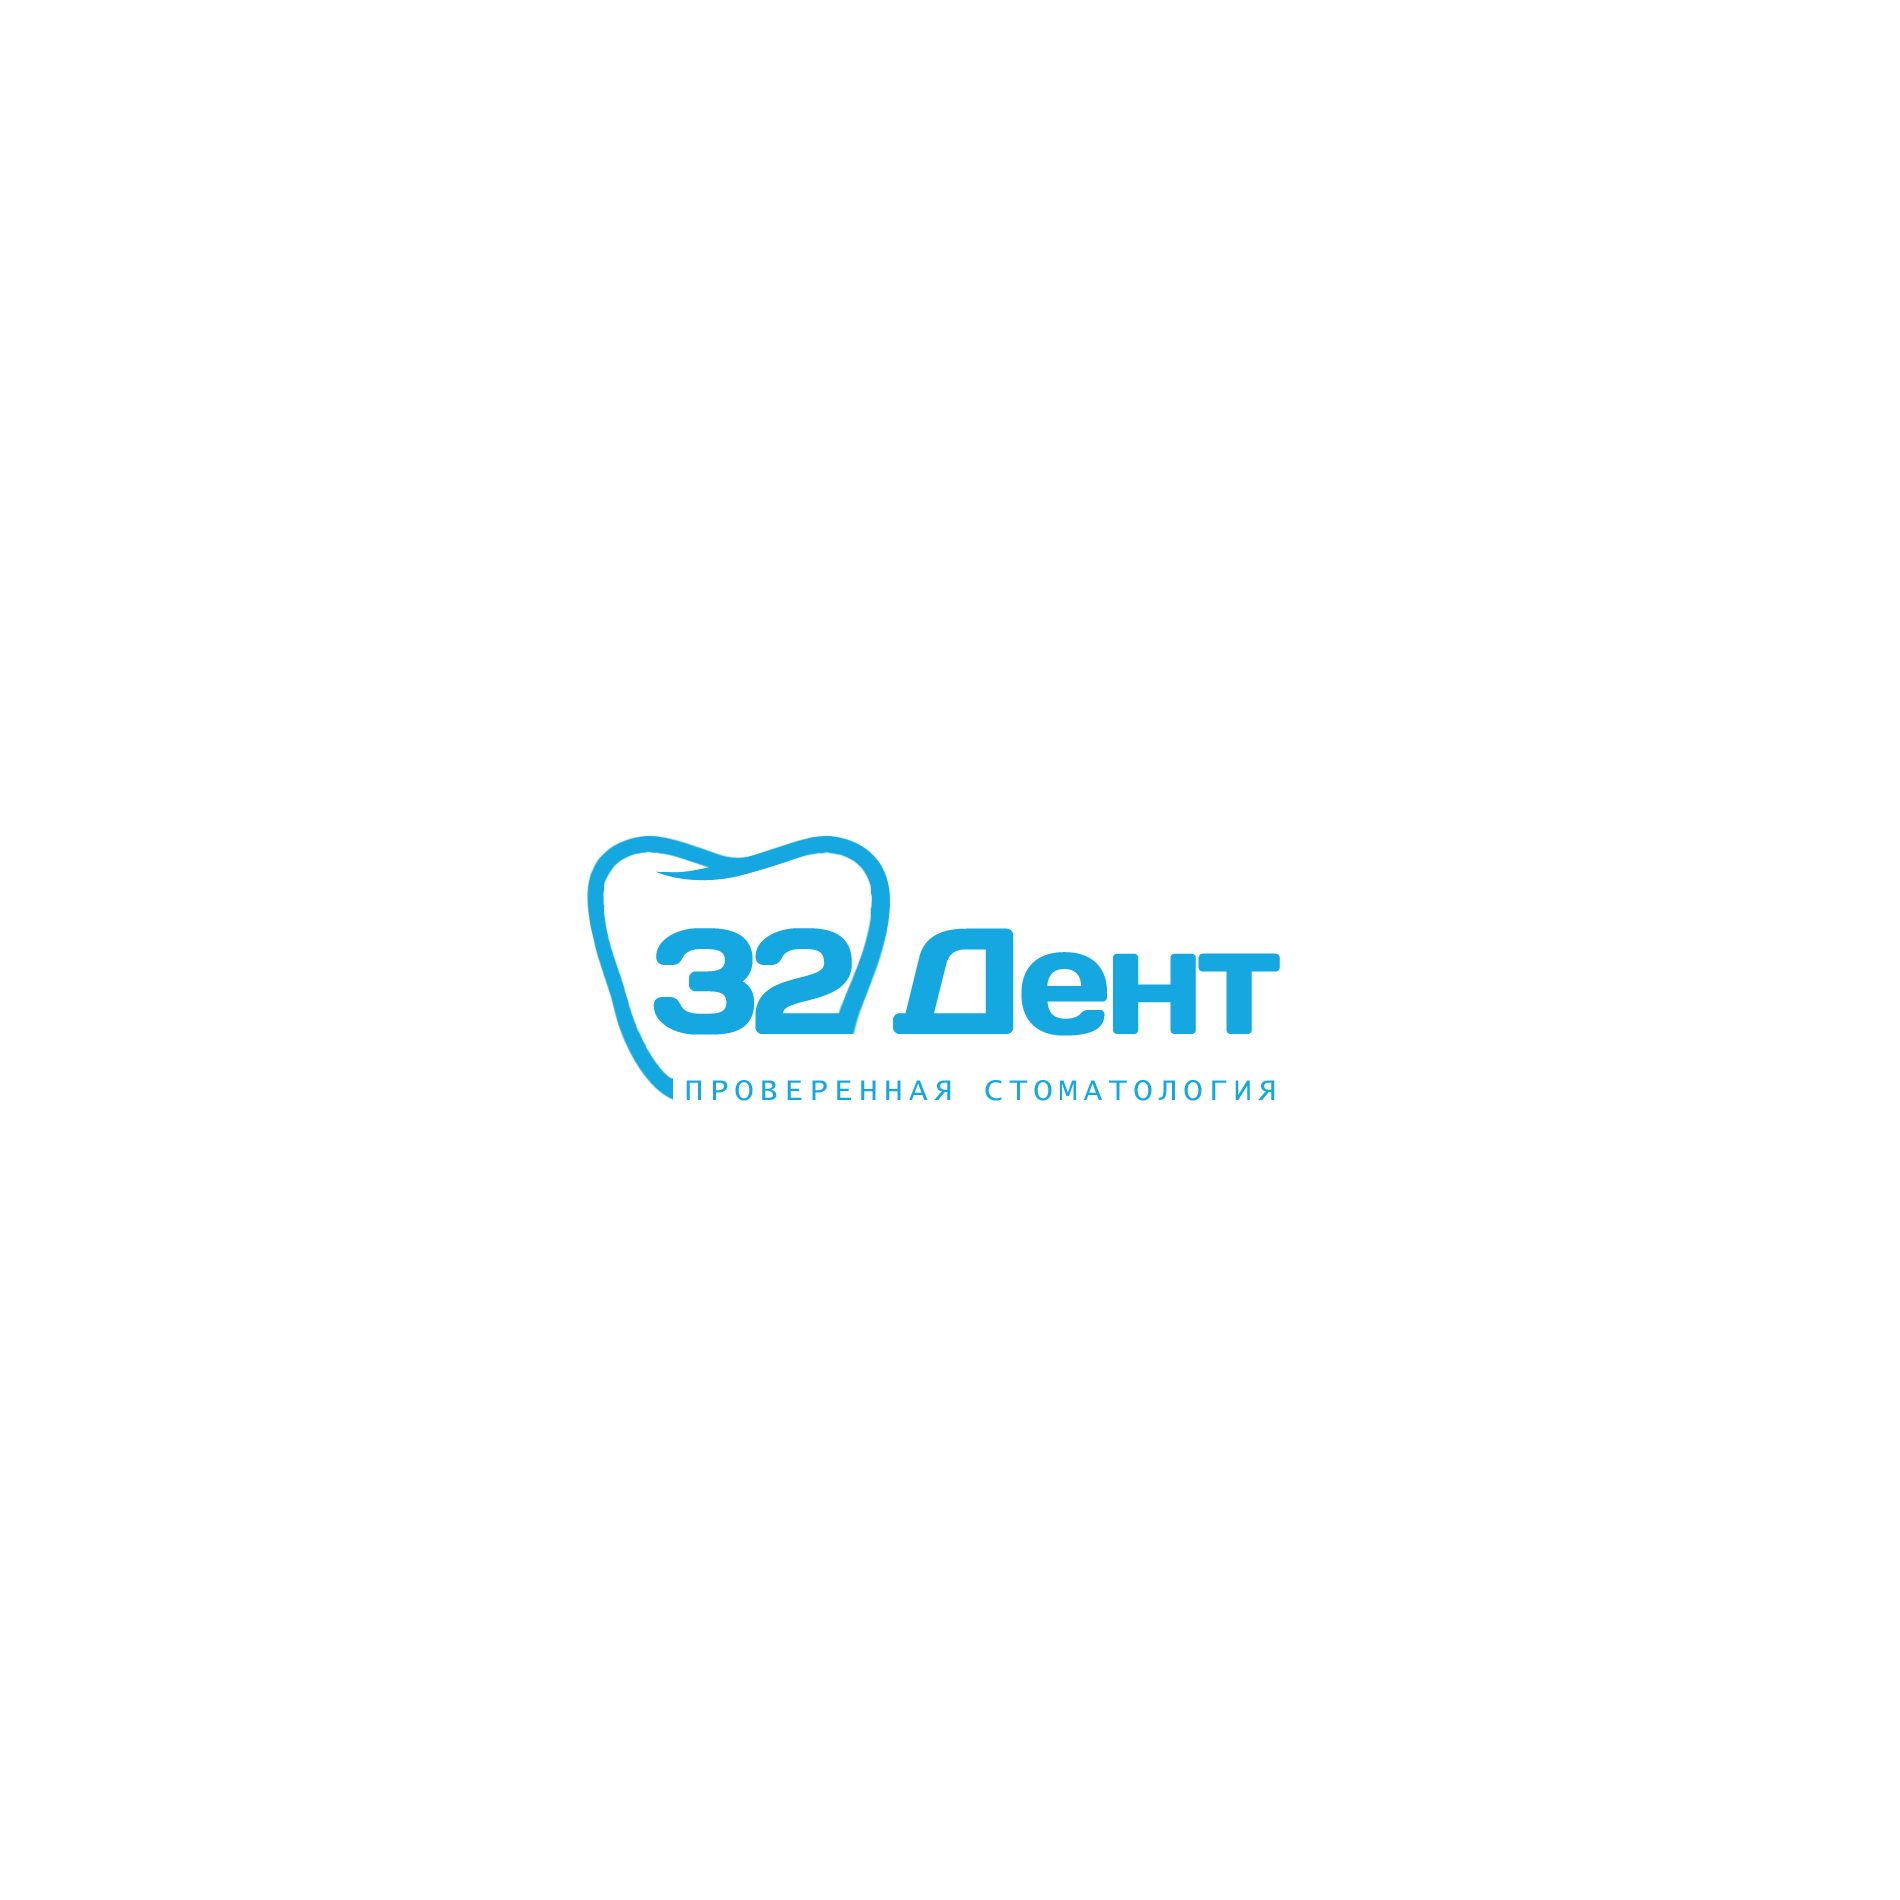 Логотип для сети стоматологических клиник - дизайнер weste32